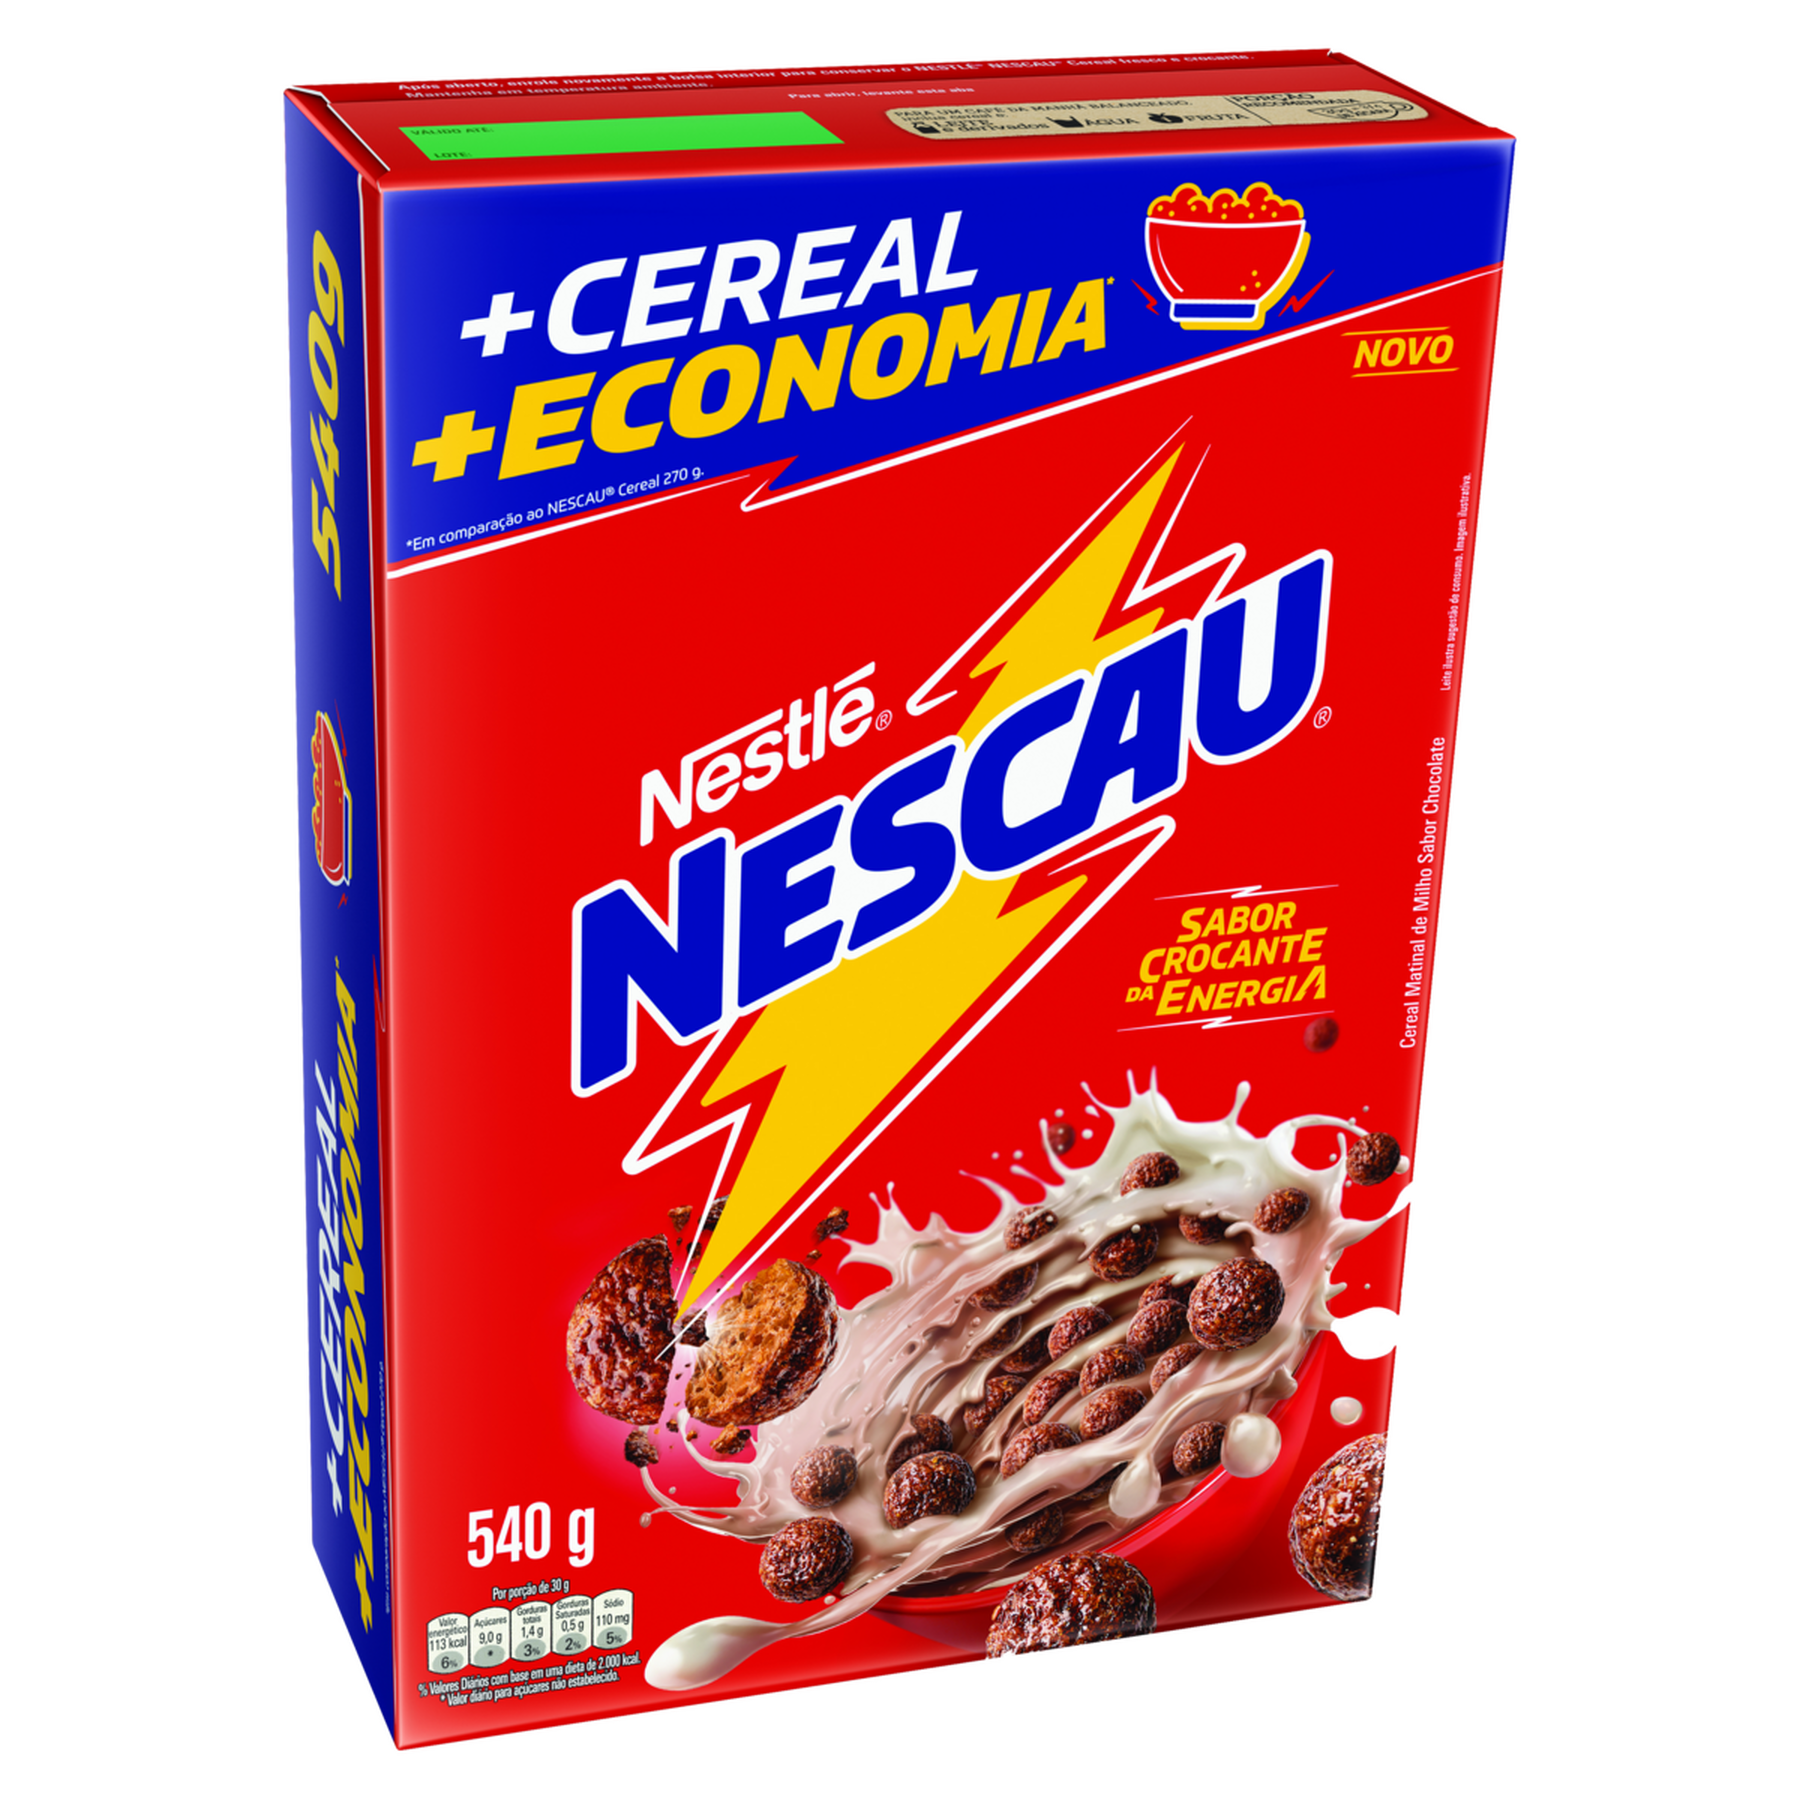 Cereal Matinal Nescau Nestlé Caixa 540g - Embalagem + Economia